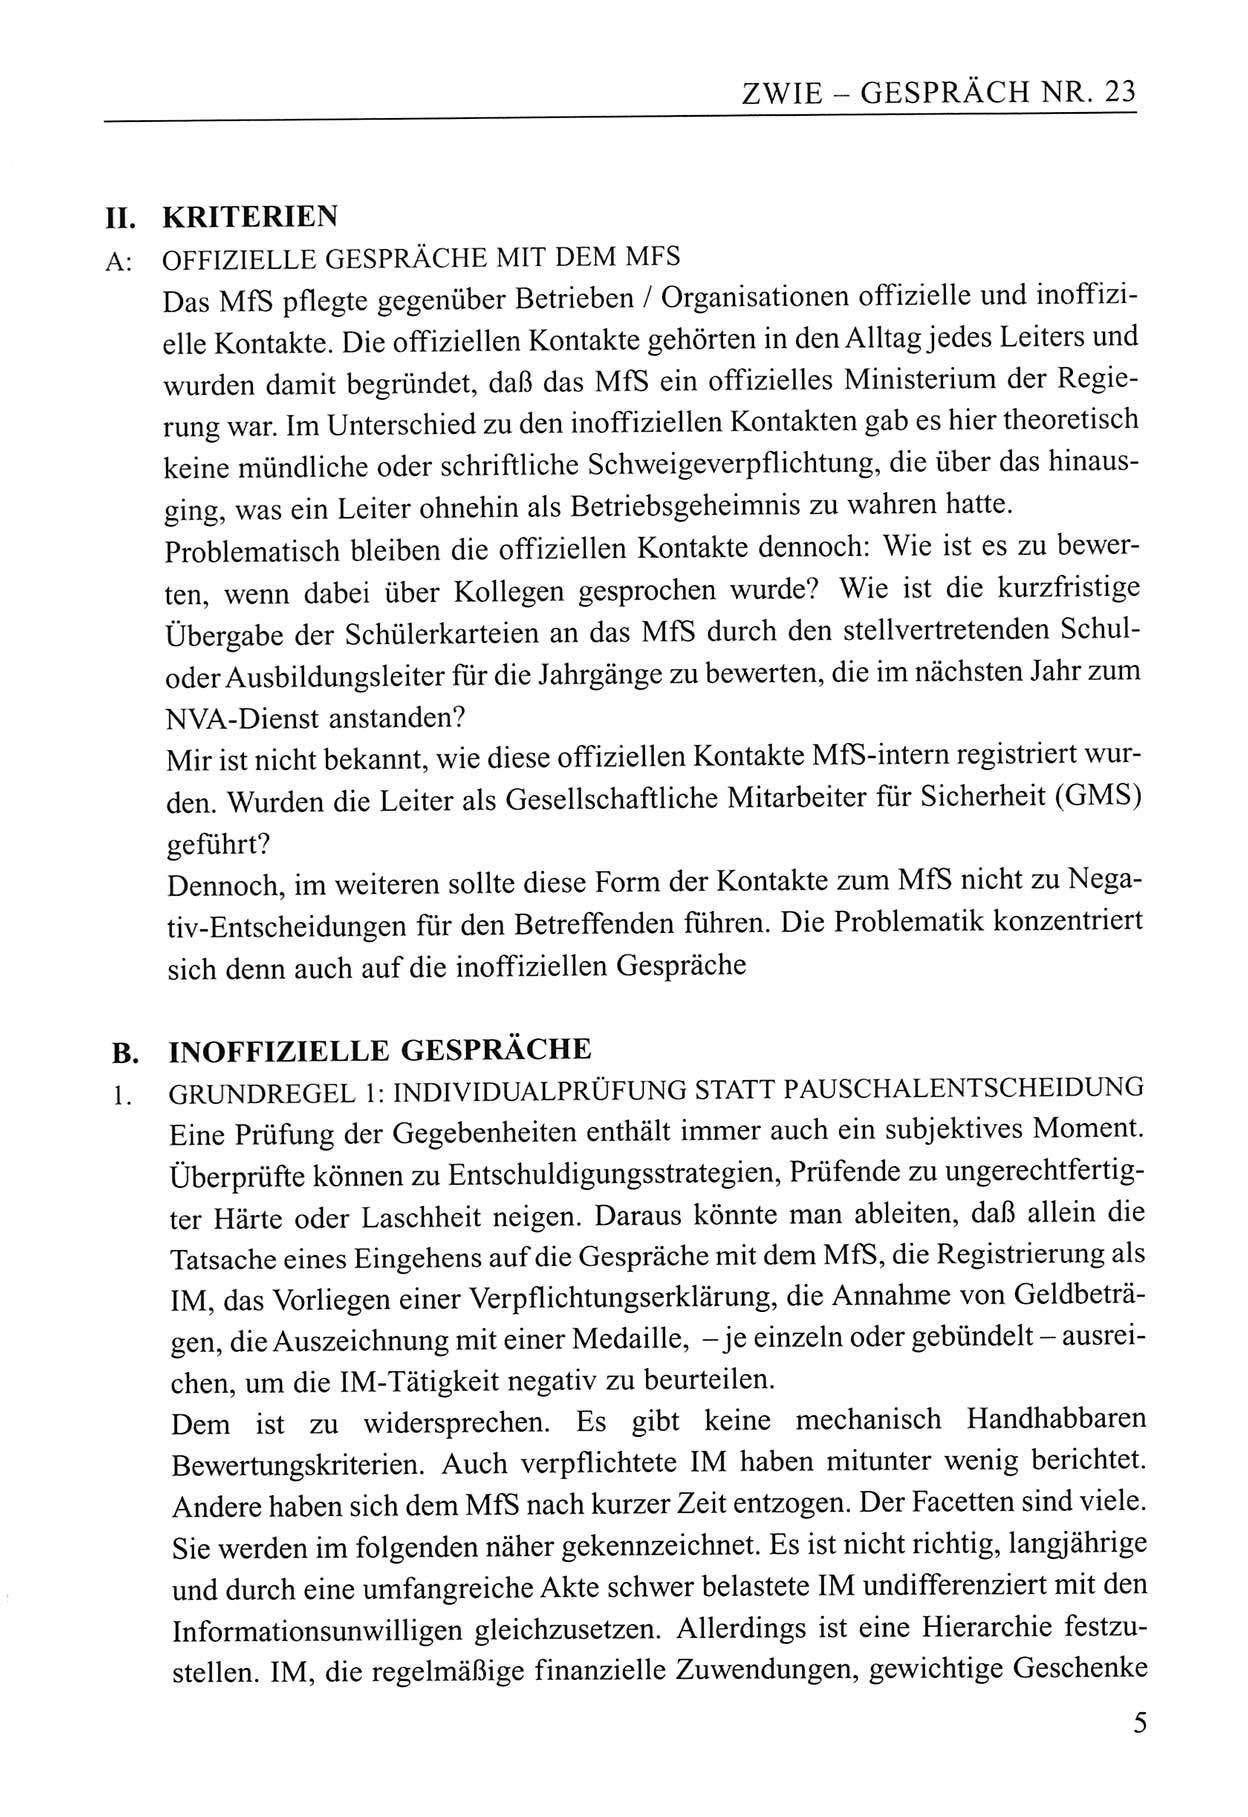 Zwie-Gespräch, Beiträge zum Umgang mit der Staatssicherheits-Vergangenheit [Deutsche Demokratische Republik (DDR)], Ausgabe Nr. 23, Berlin 1994, Seite 5 (Zwie-Gespr. Ausg. 23 1994, S. 5)